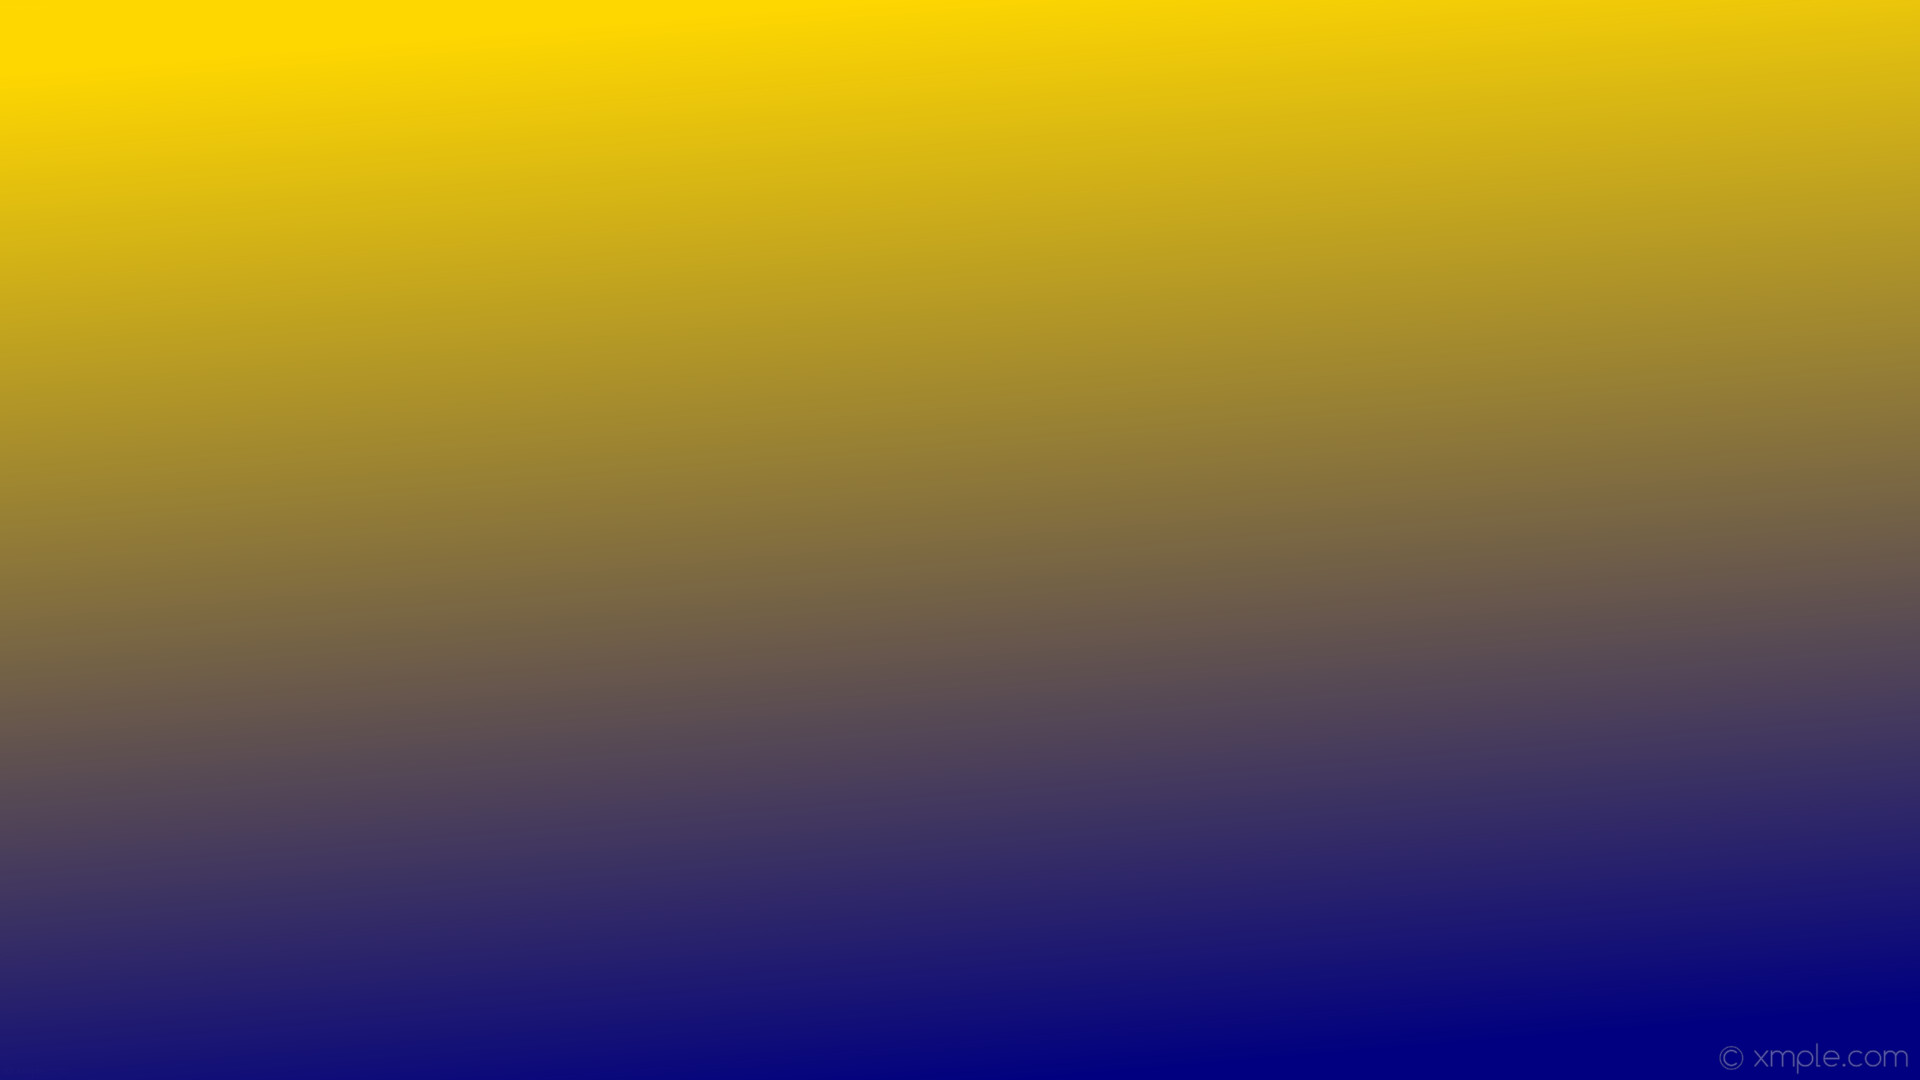 1920x1080 wallpaper linear gradient yellow blue gold navy #ffd700 #000080 105Â°